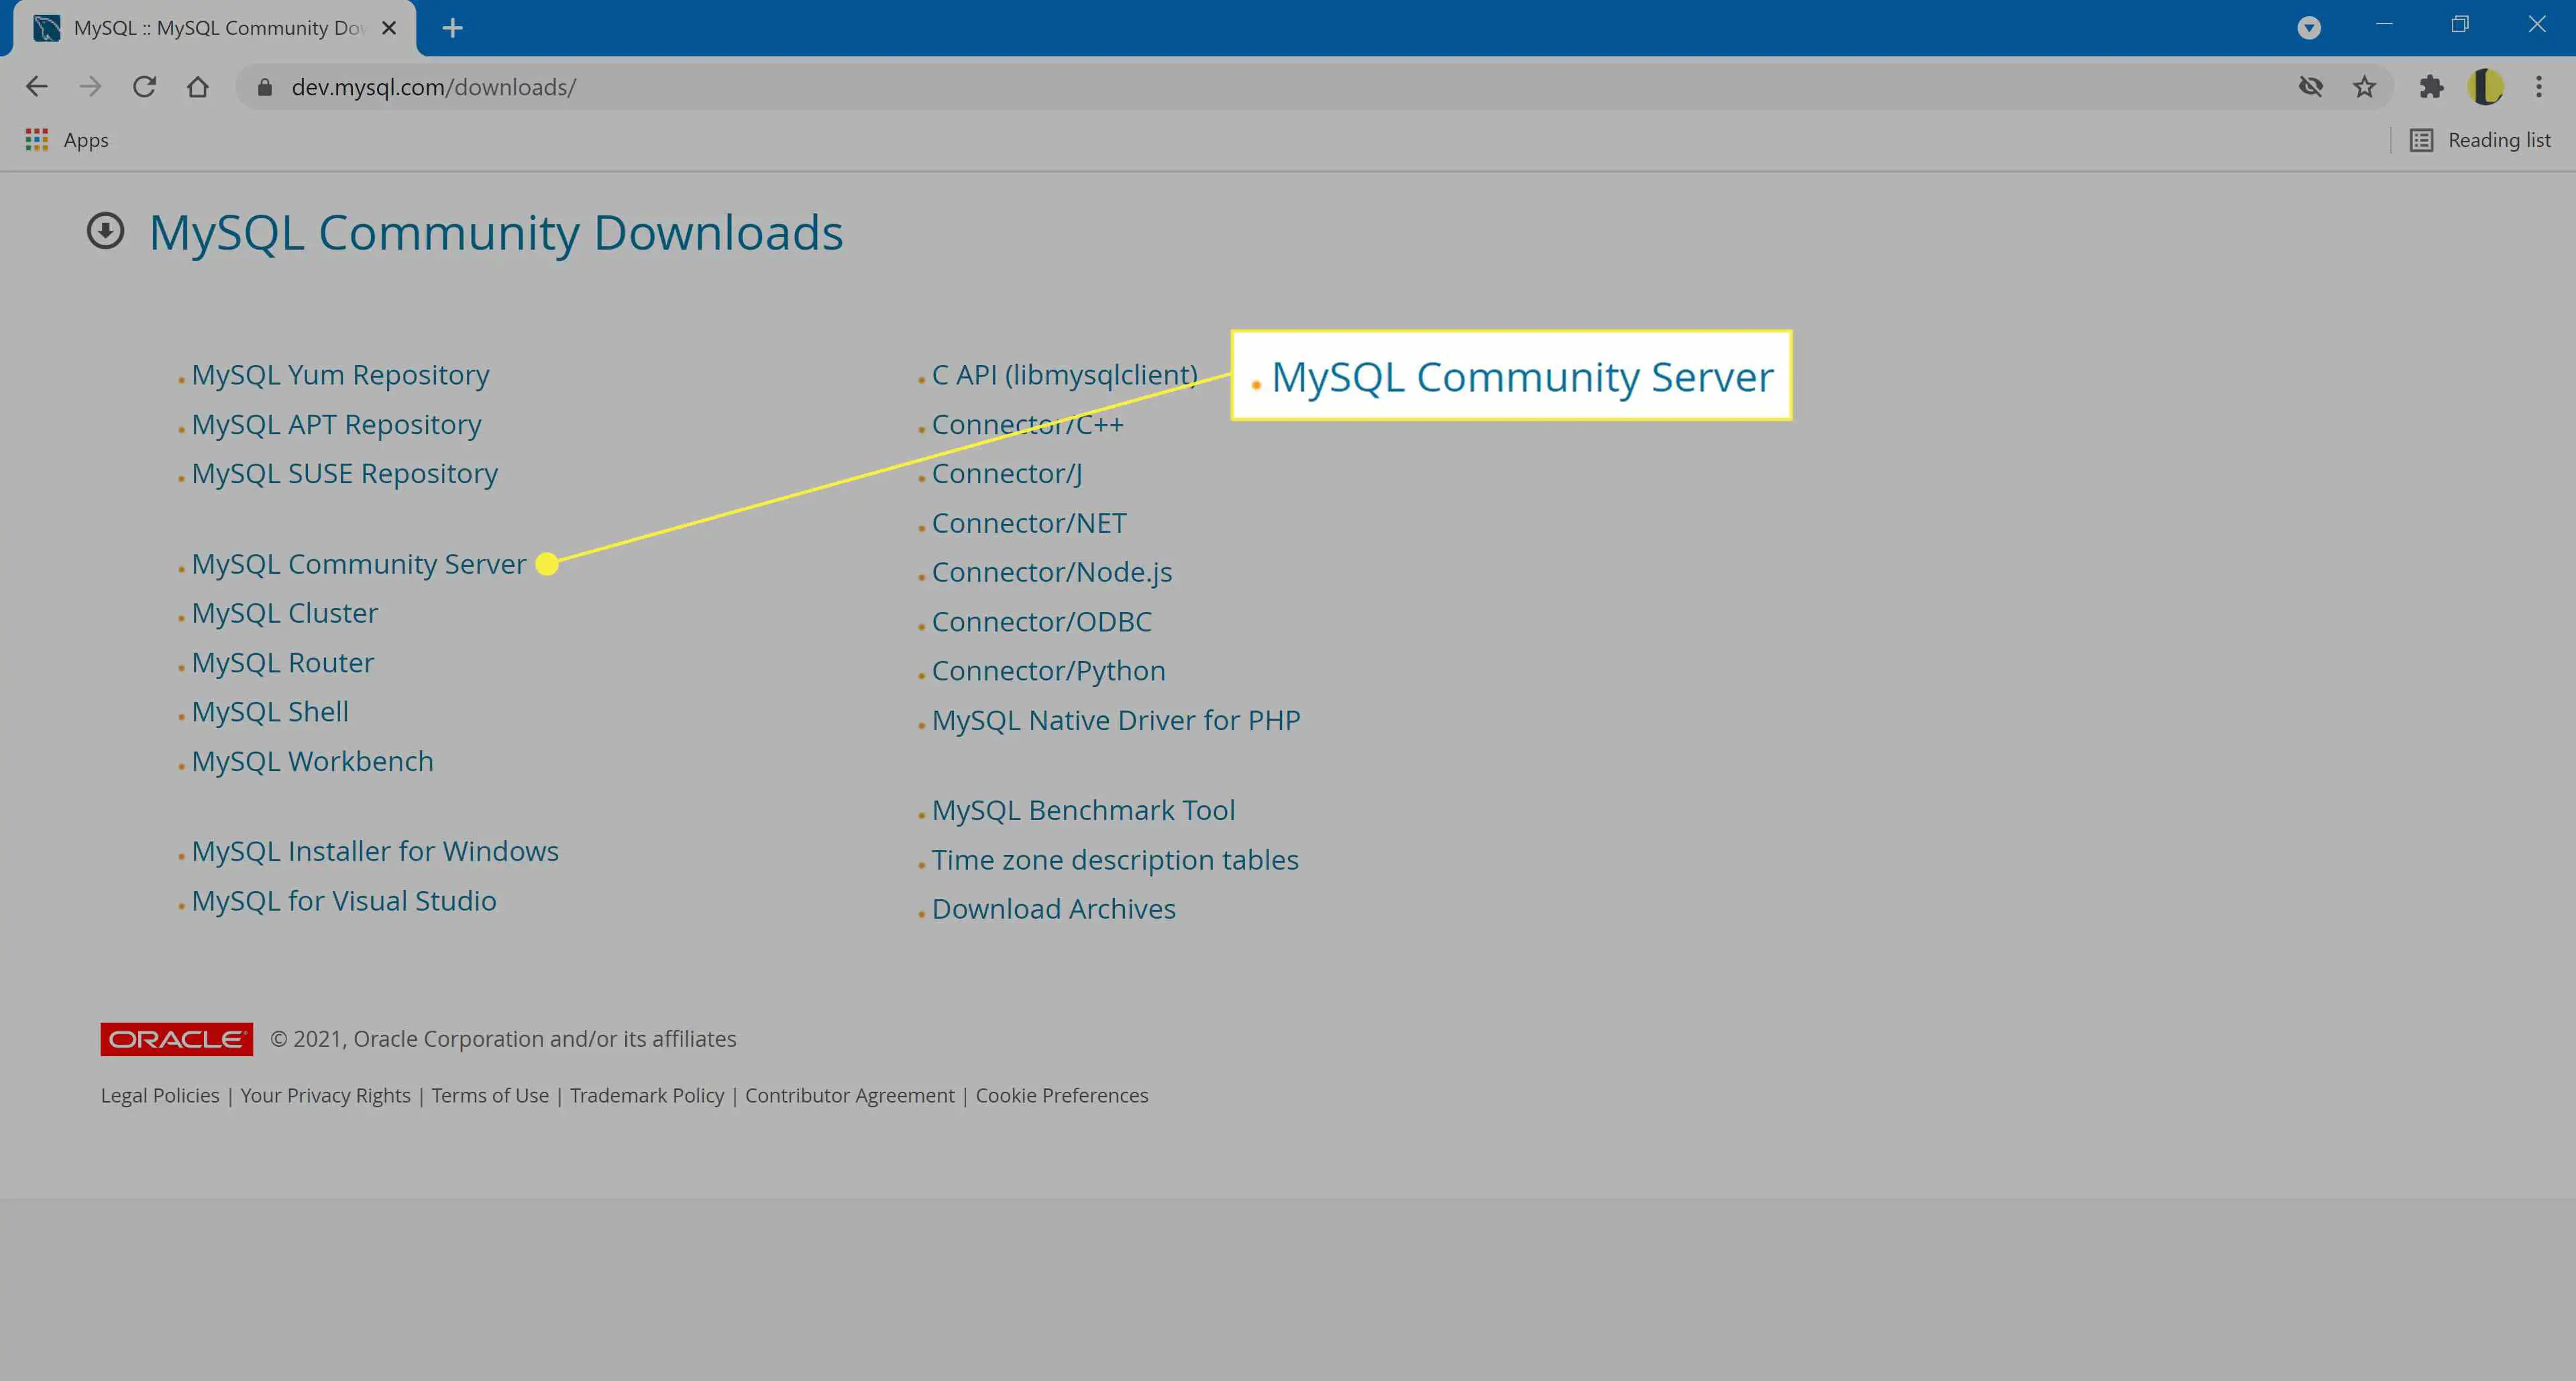 O item "MySQL Community Server".